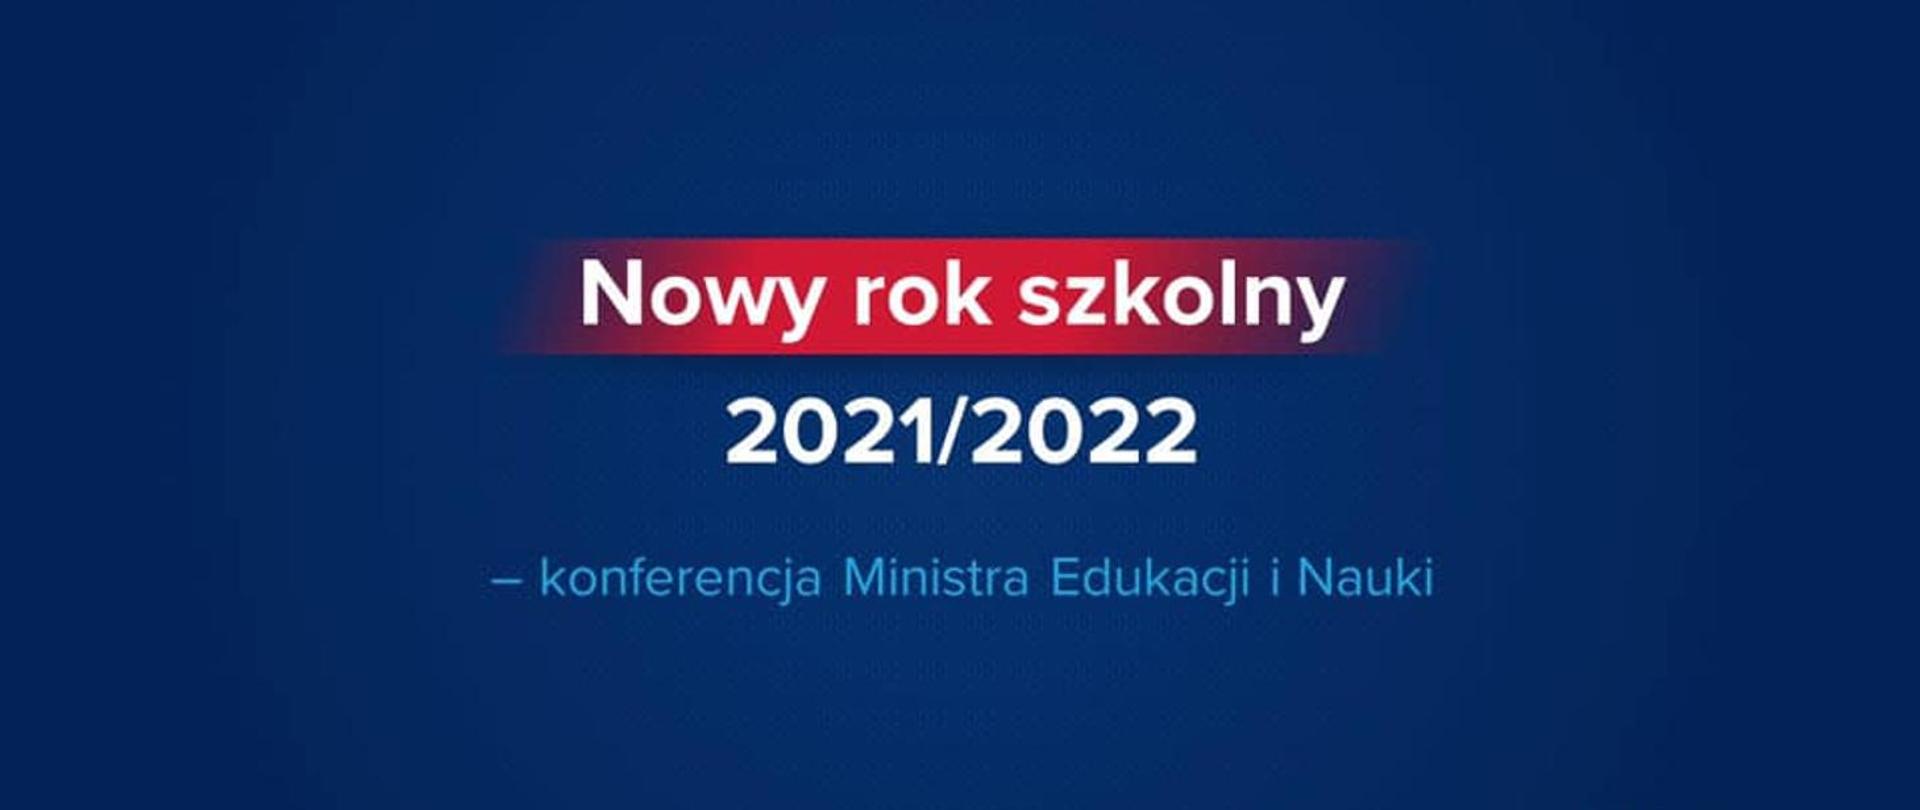 Grafika przedstawiająca napis Nowy rok szkolny 2021/2022 - konferencja Ministra Edukacji i Nauki na granatowo czerwonym tle